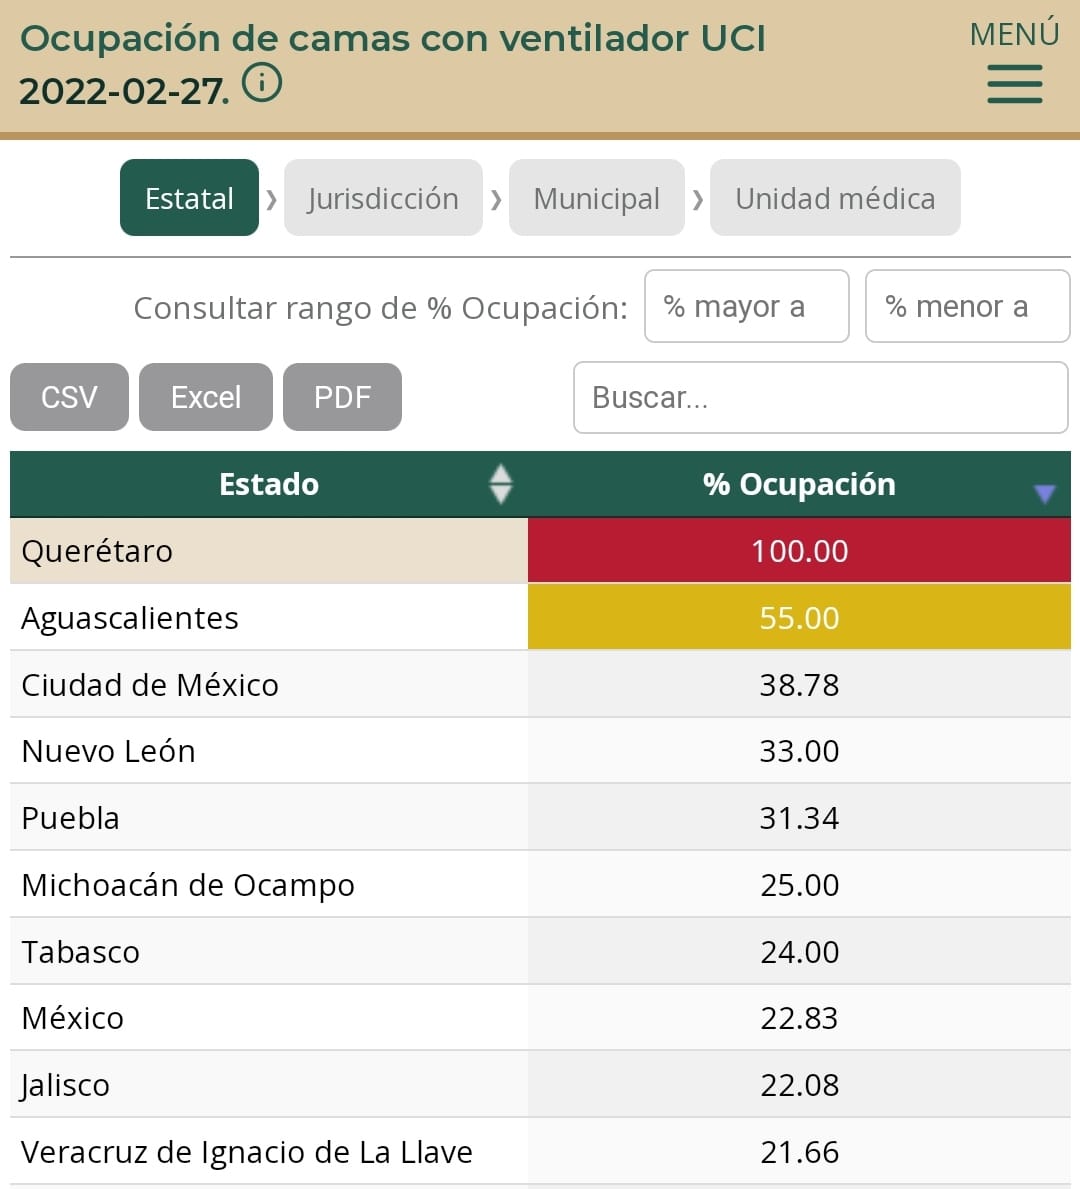 Querétato, Aguascalientes y Ciudad de México, estados del país con más porcentaje de pacientes hospitalizados por Covid en Unidades de Cuidados Intensivos: Irag